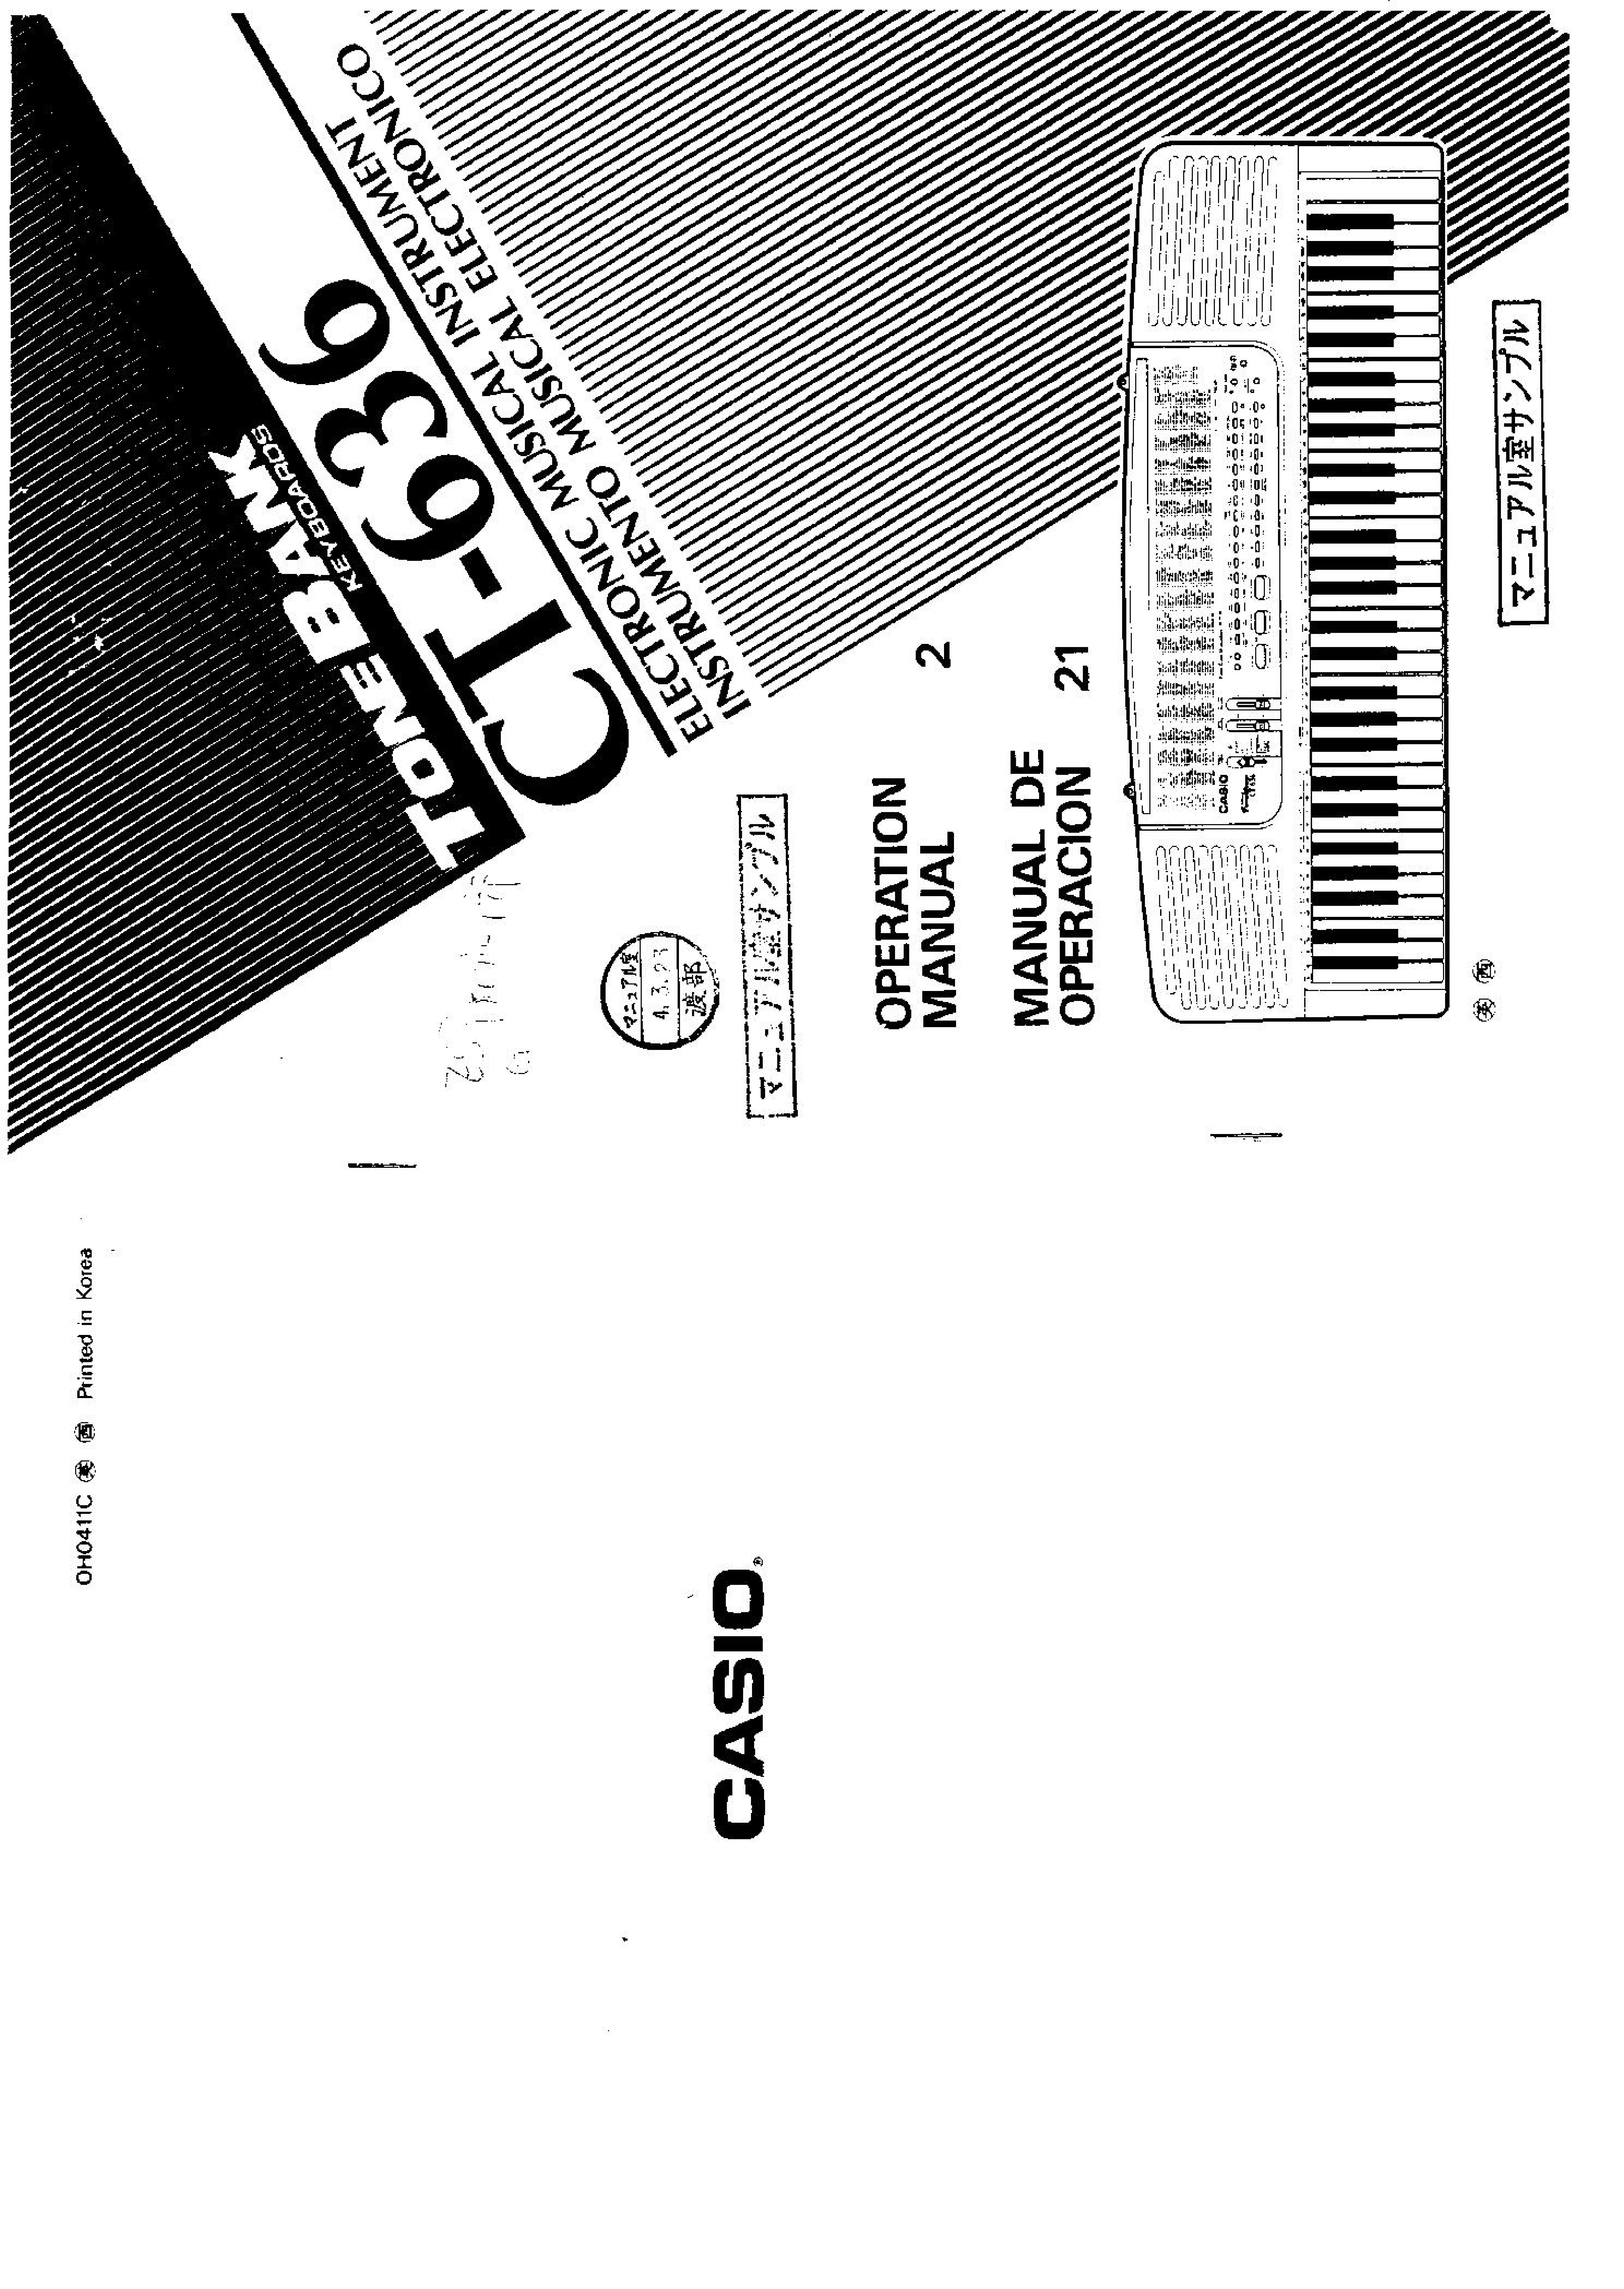 Casio CT636 Electronic Keyboard User Manual